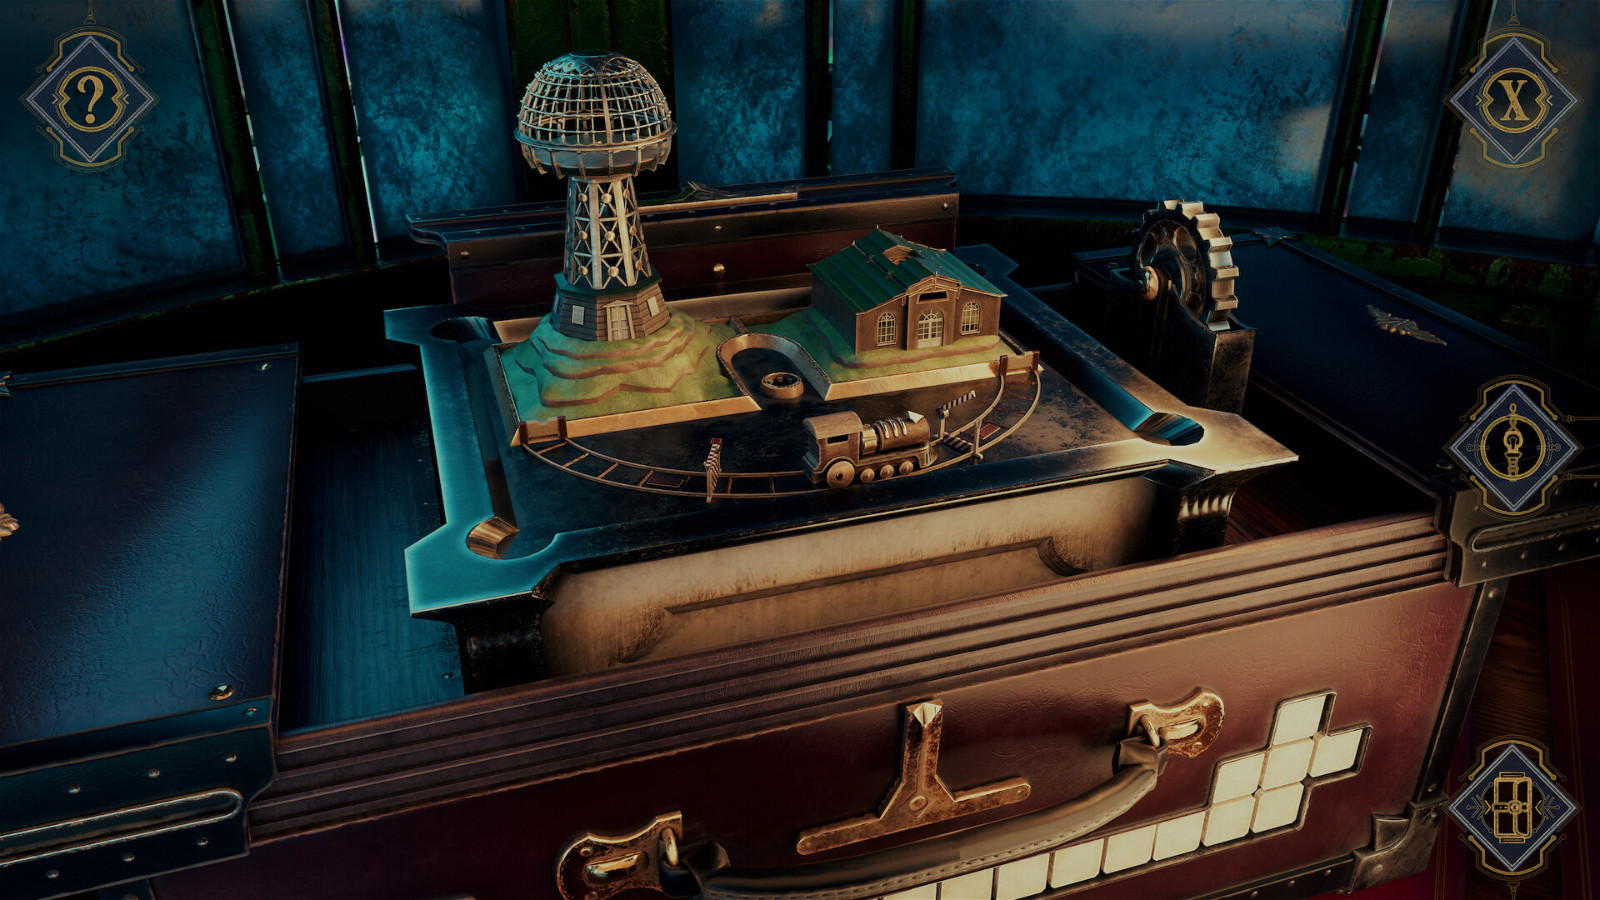 解謎遊戲《特斯拉密室》Steam頁面上線 發售日期待定